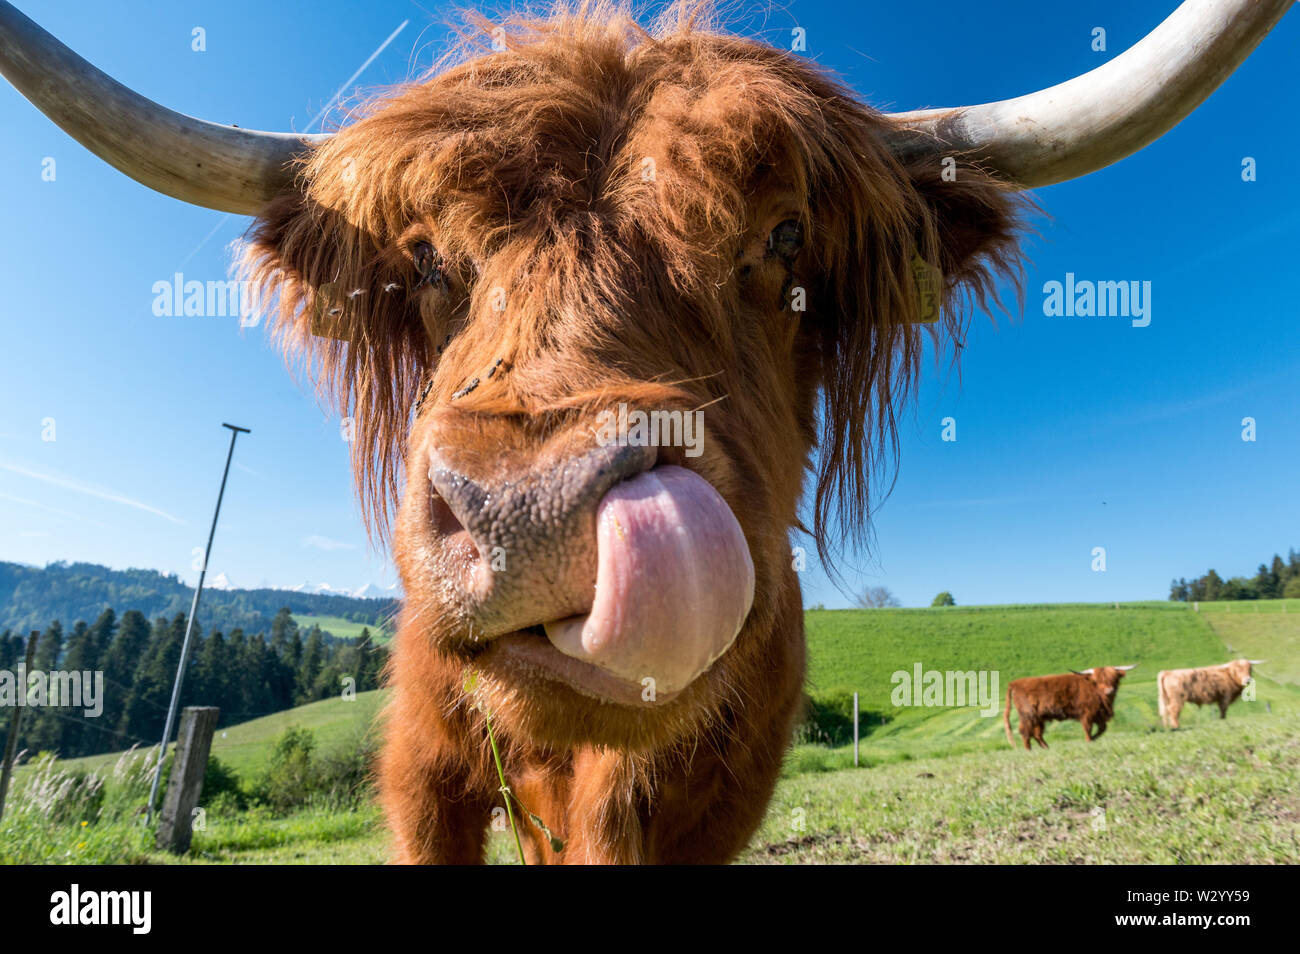 Close-up hairy Scottish Highland cattle dans un pré vert en suisse Banque D'Images